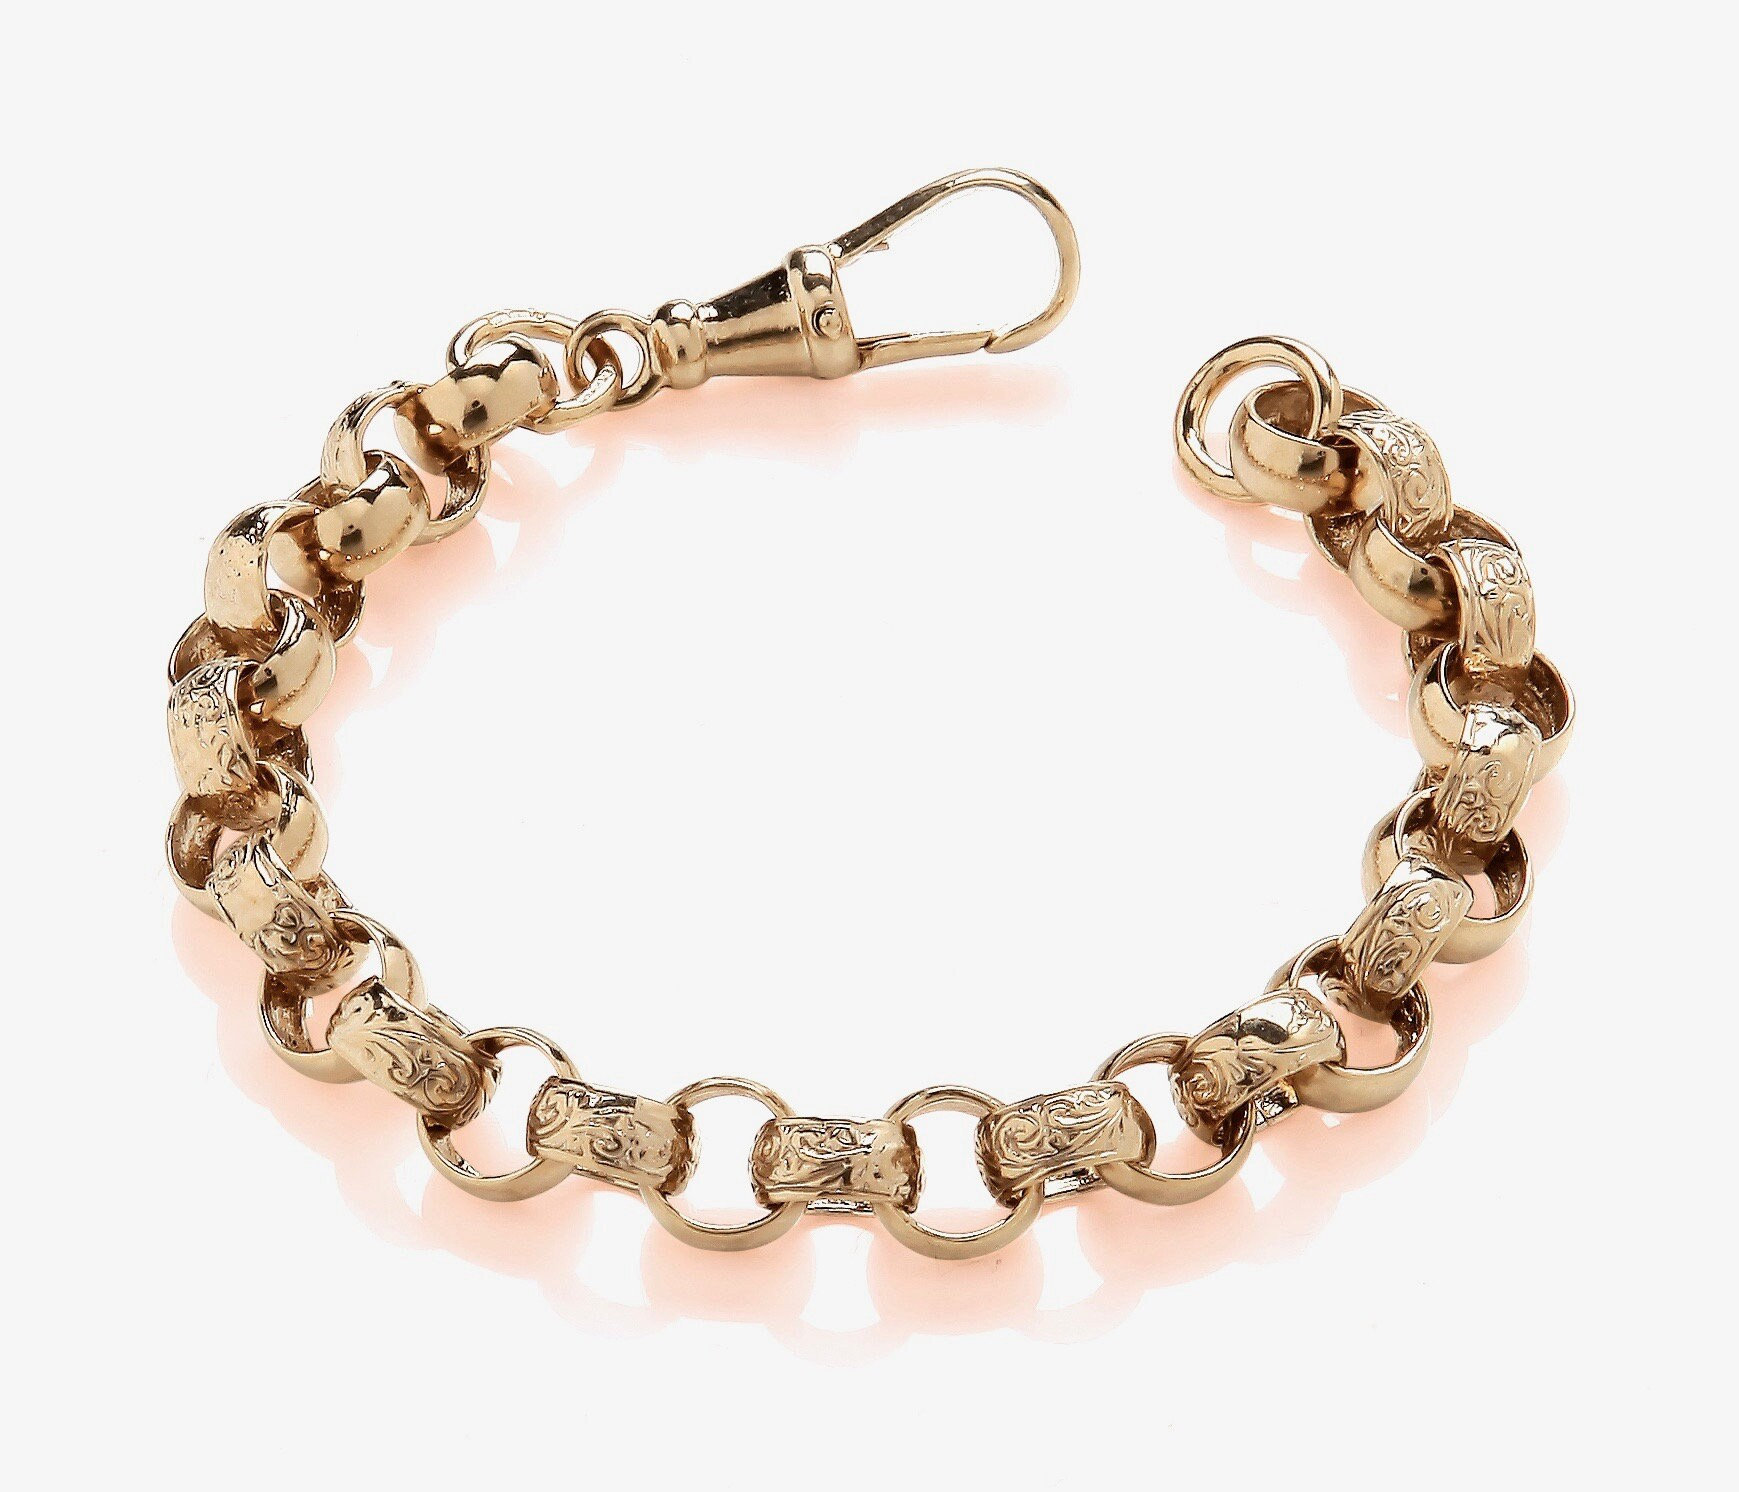 14K Gold Charm Bracelet, Rolo Chain, Minimalist Fine Jewelry, Gift for Her,  Everyday Gold Jewelry, Triple Charm Bracelet, Evil Eye 